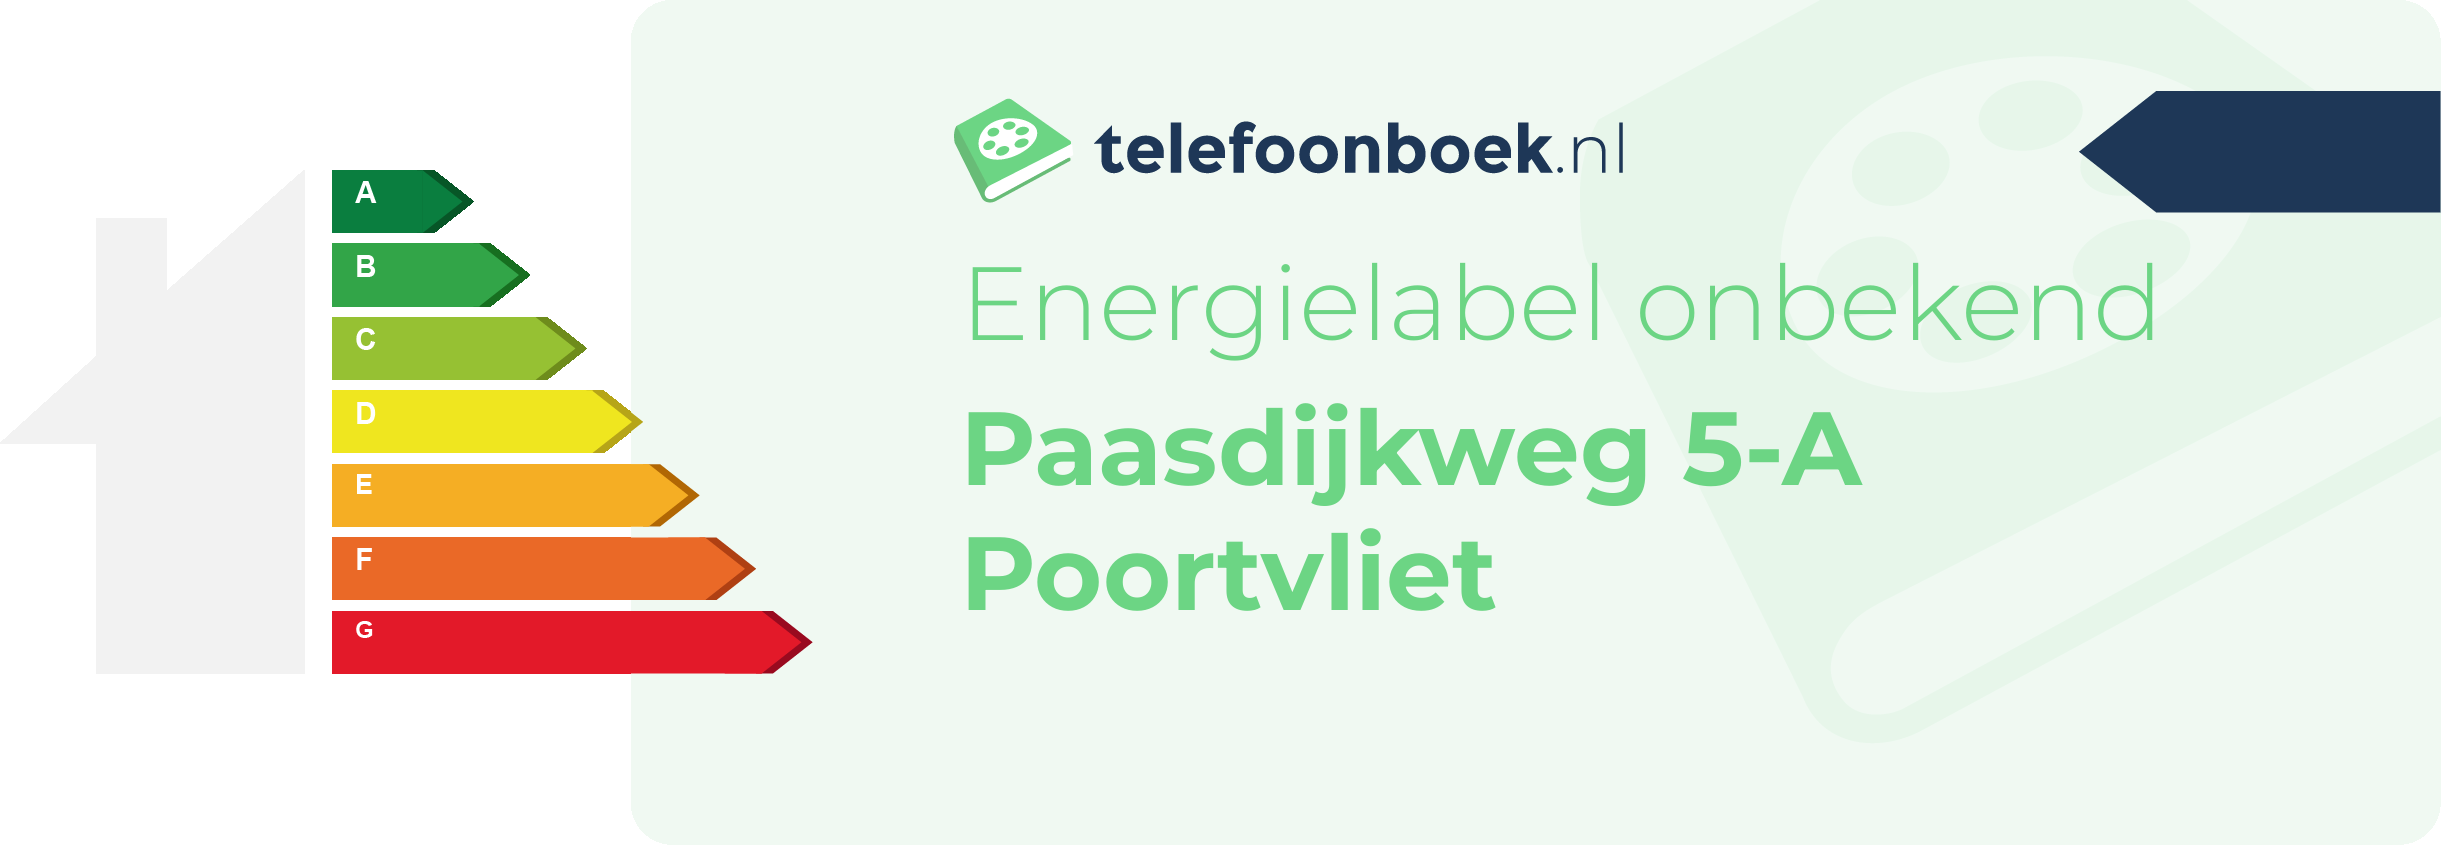 Energielabel Paasdijkweg 5-A Poortvliet